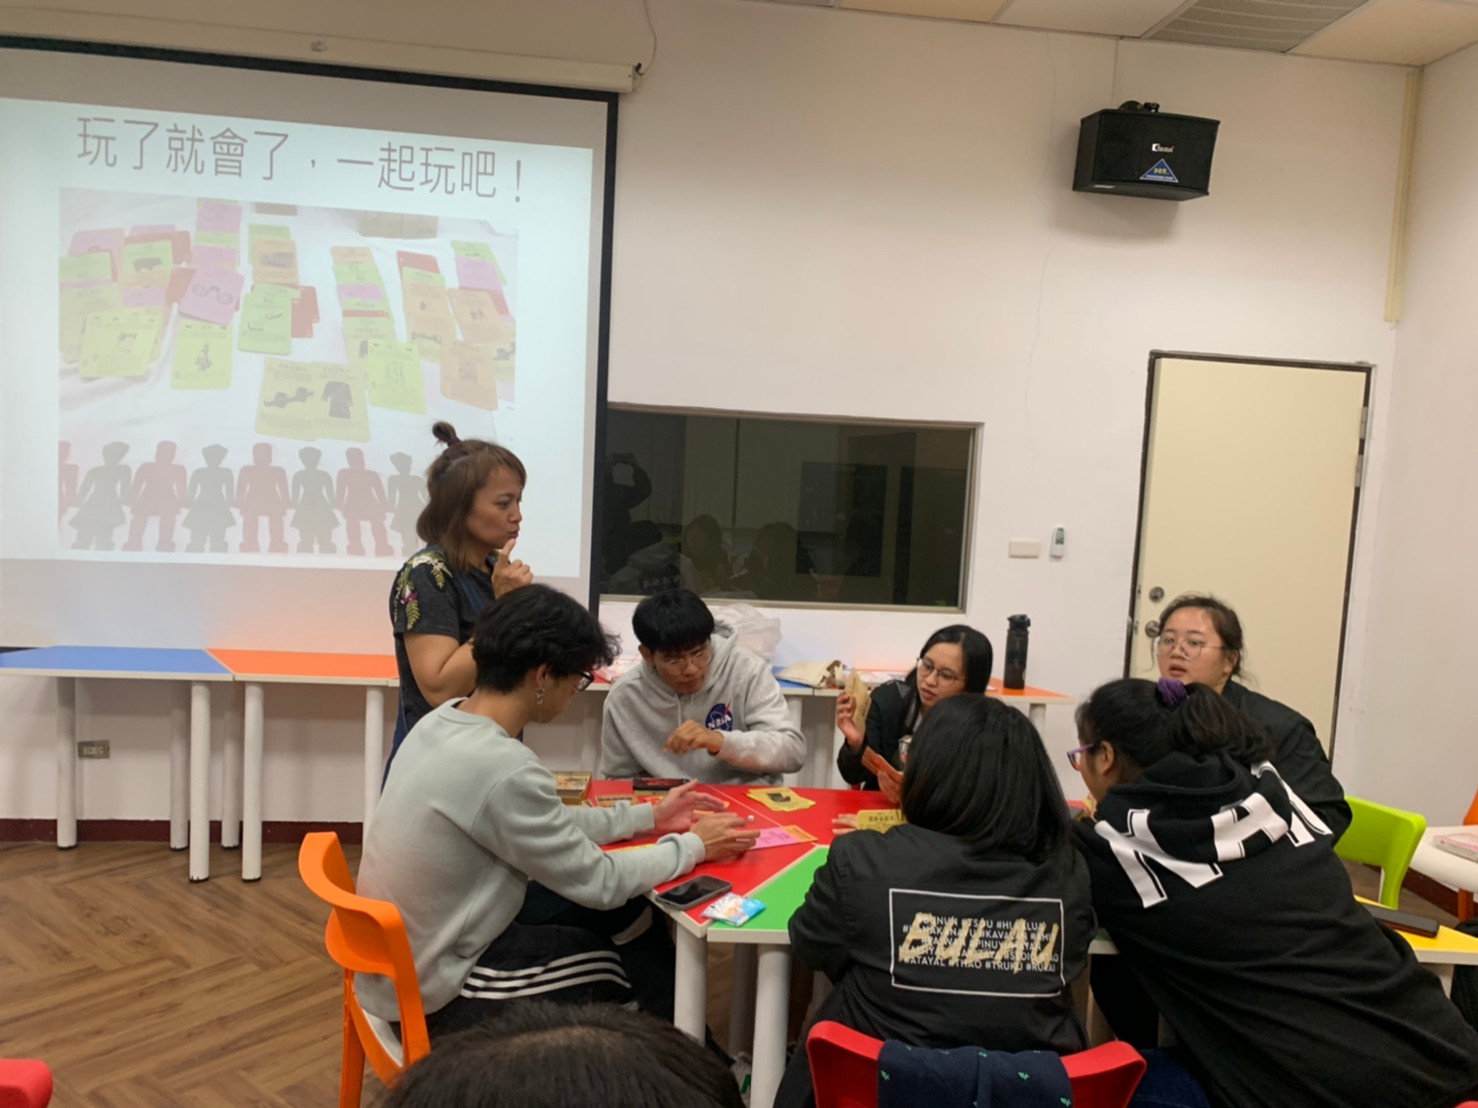 110認識排灣族文化 部落公法人 老師講解桌遊規則